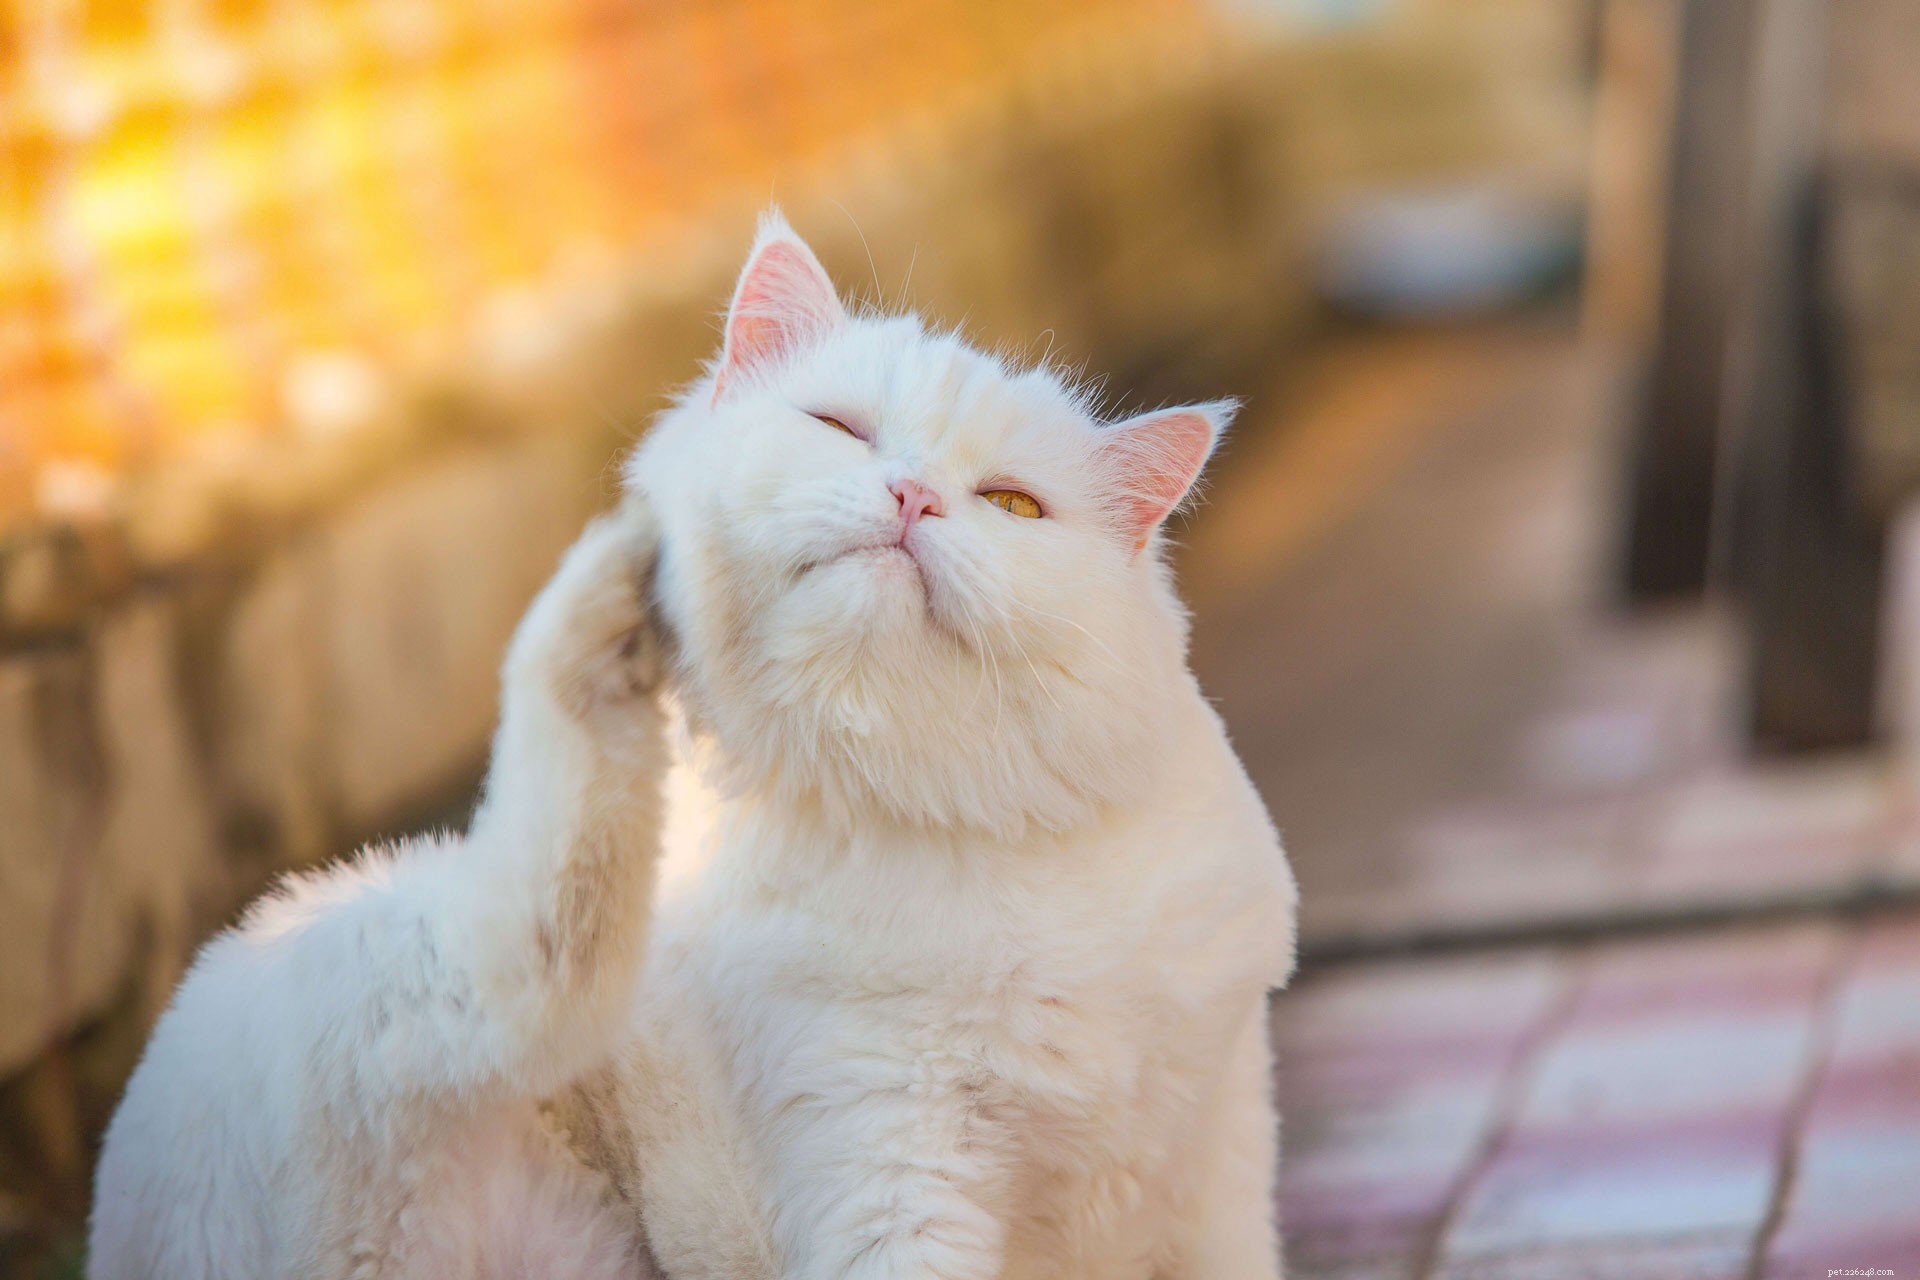 Snadné domácí prostředky pro léčbu ušního roztoče u koček